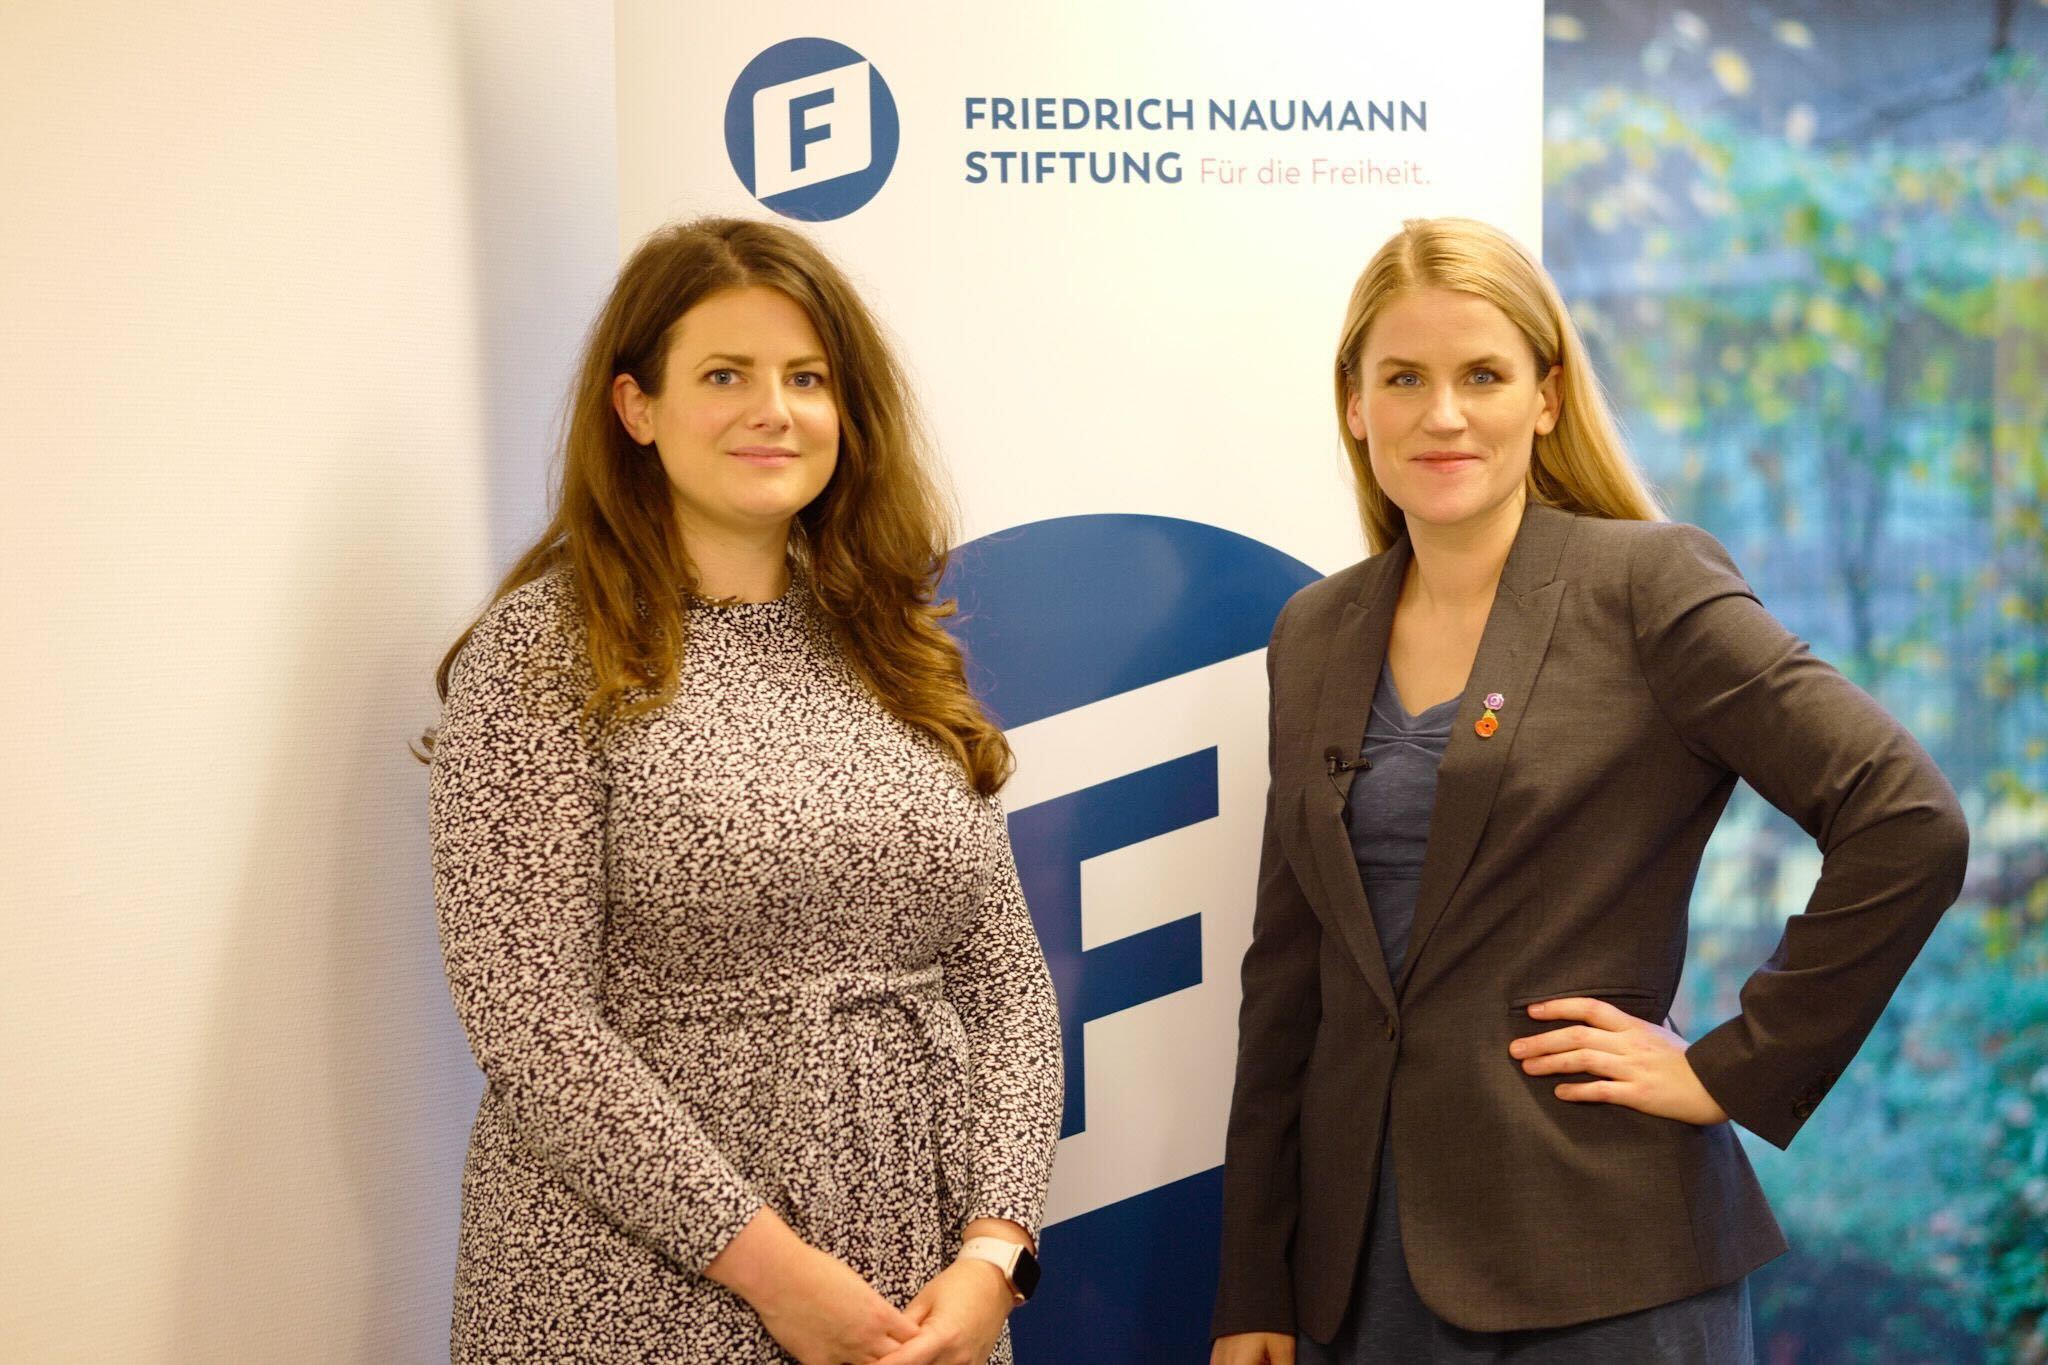 FNF Digital Expertin Ann Cathrin Riedel mit Facebook Whistelblowerin Frances Haugen